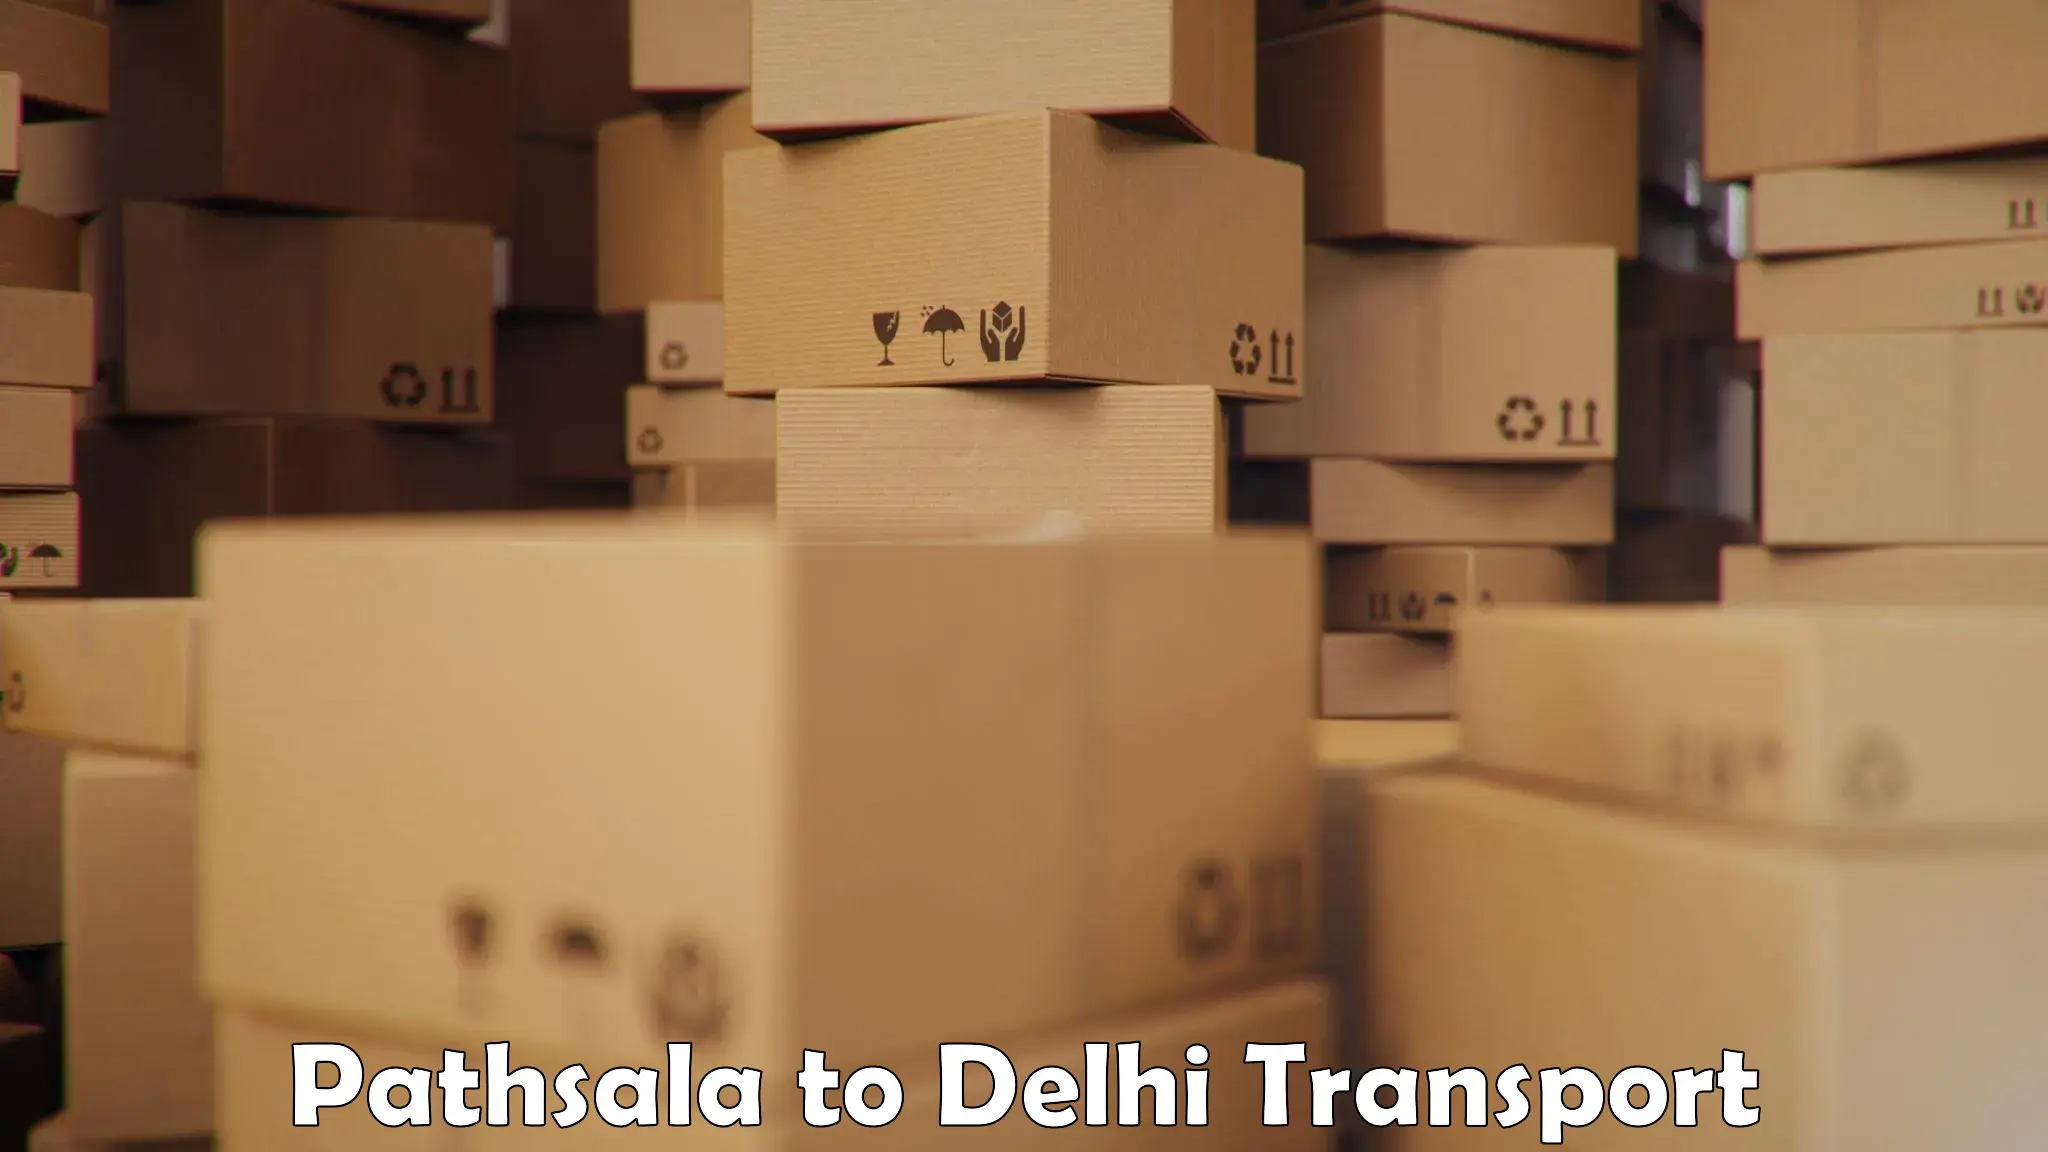 Express transport services Pathsala to Jamia Millia Islamia New Delhi